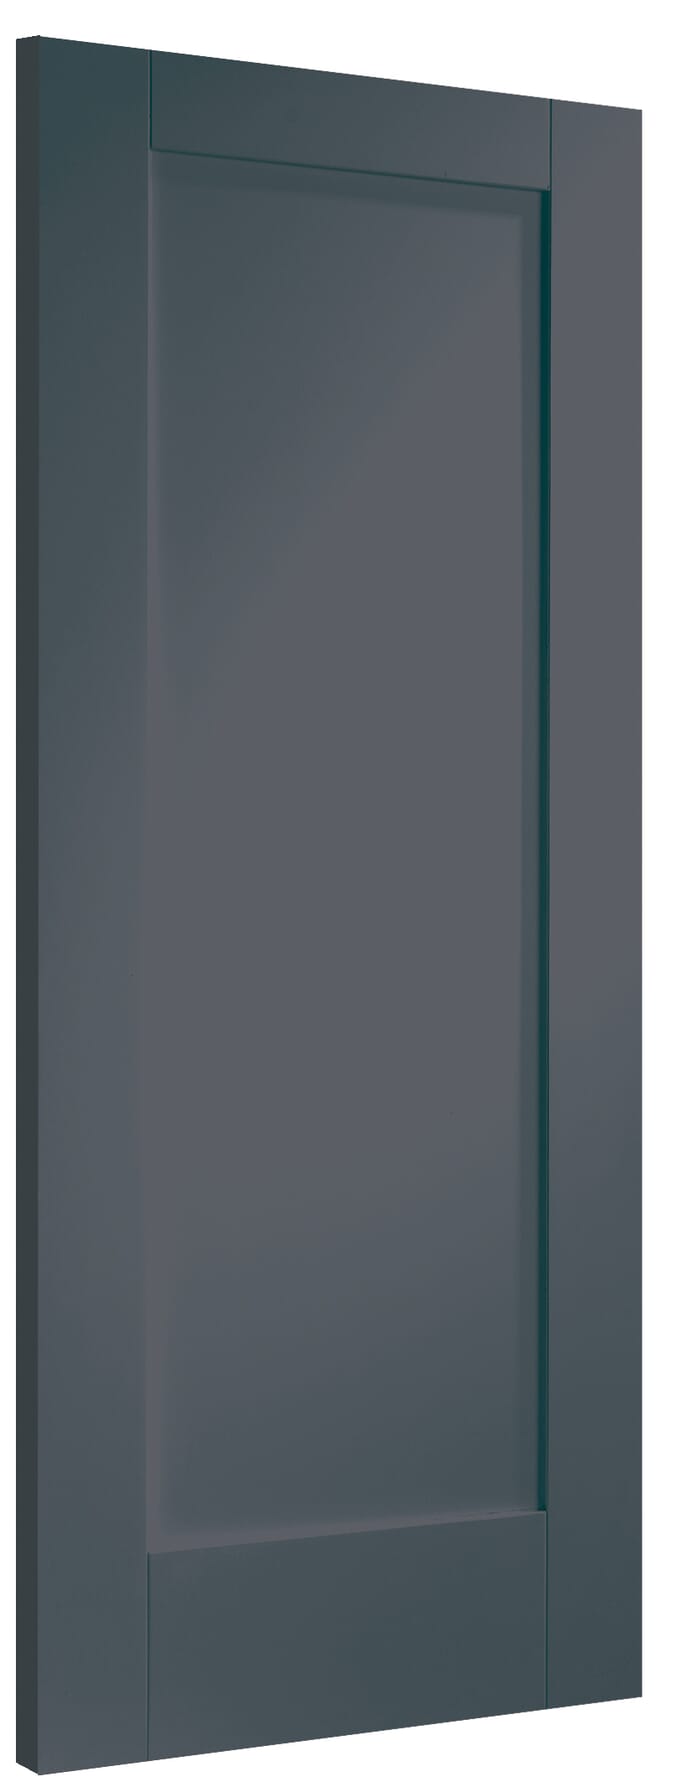 762x1981x44mm (30") Pattern 10 Cinder Grey Fire Door